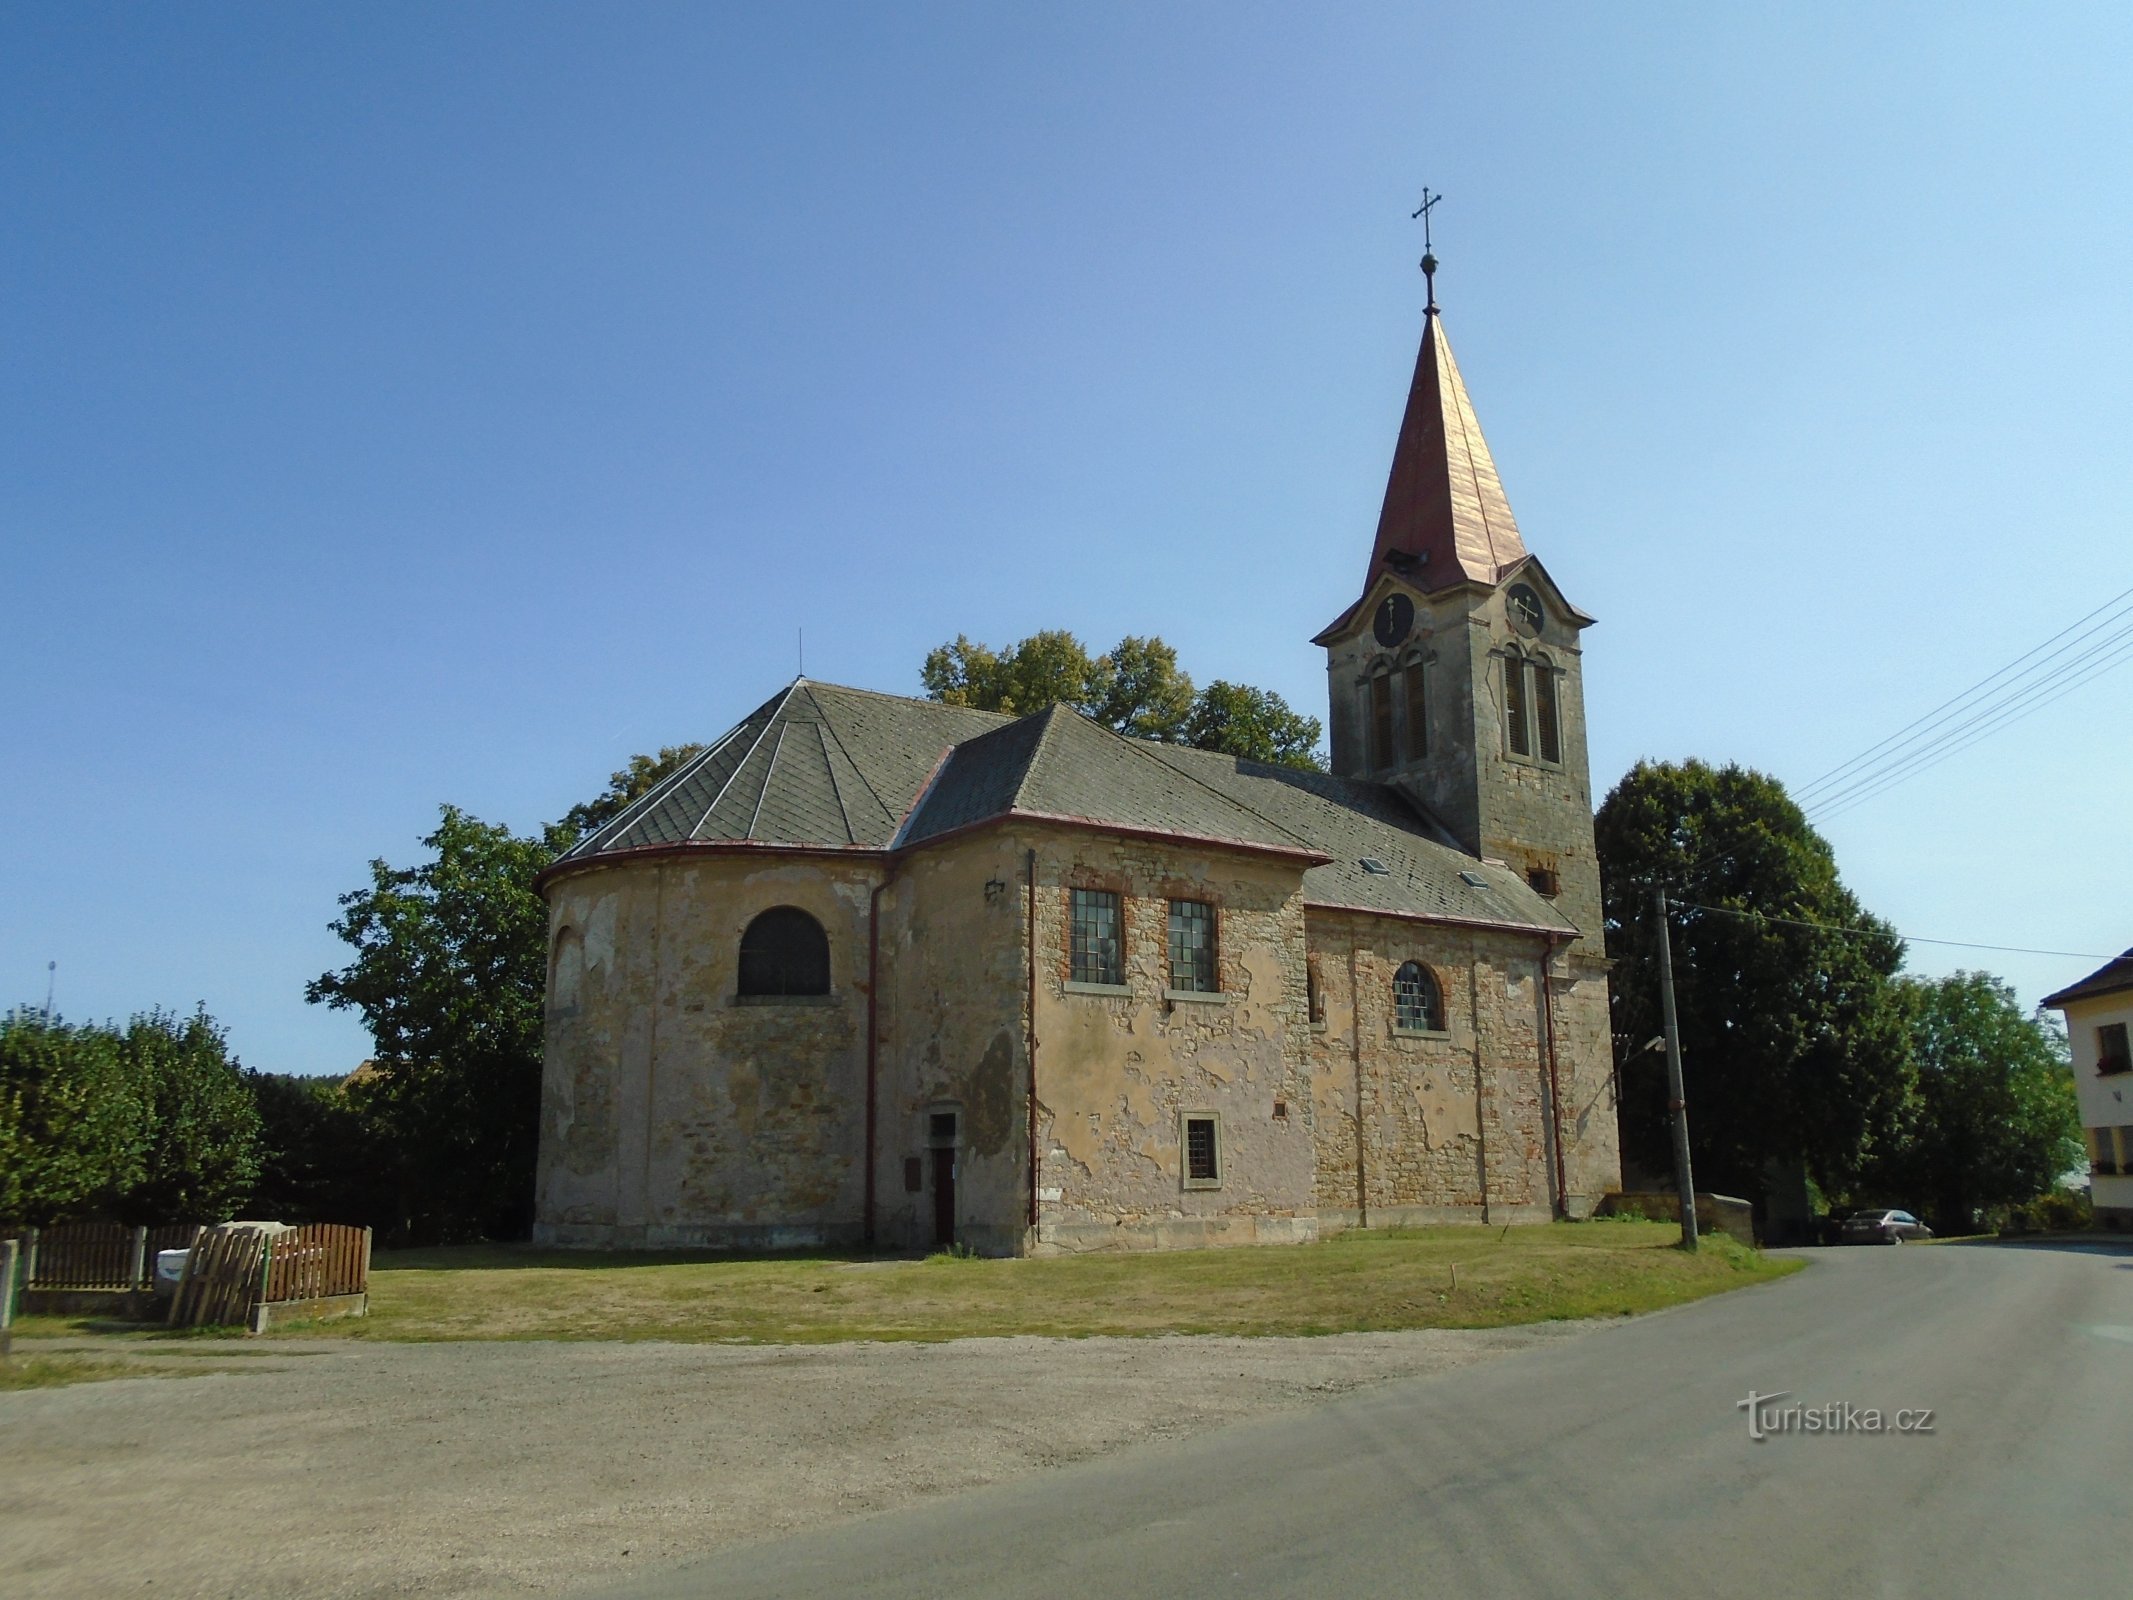 Церковь св. Прокоп, аббат (Горжиневес)